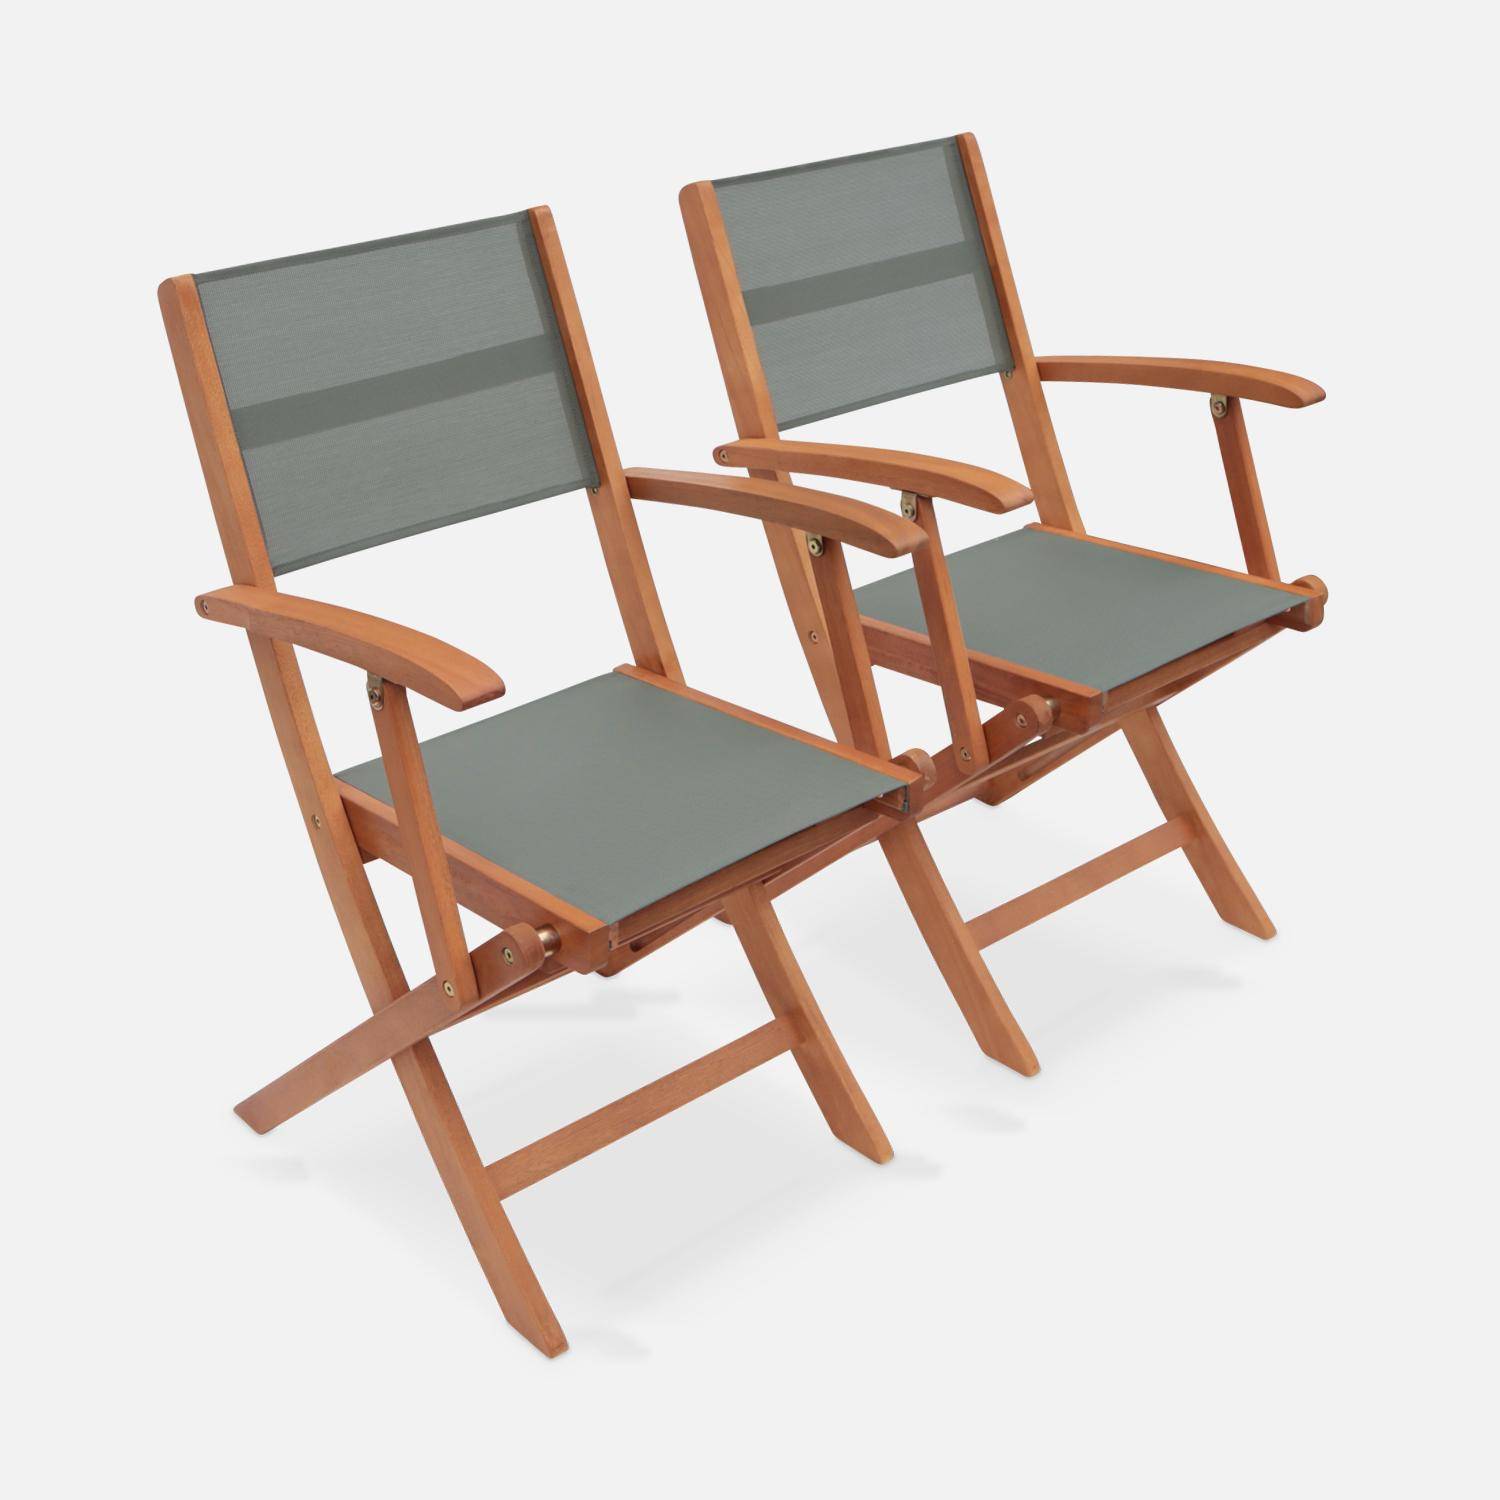 Fauteuils de jardin en bois et textilène - Almeria savane - 2 fauteuils pliants en bois d'Eucalyptus FSC huilé et textilène Photo3